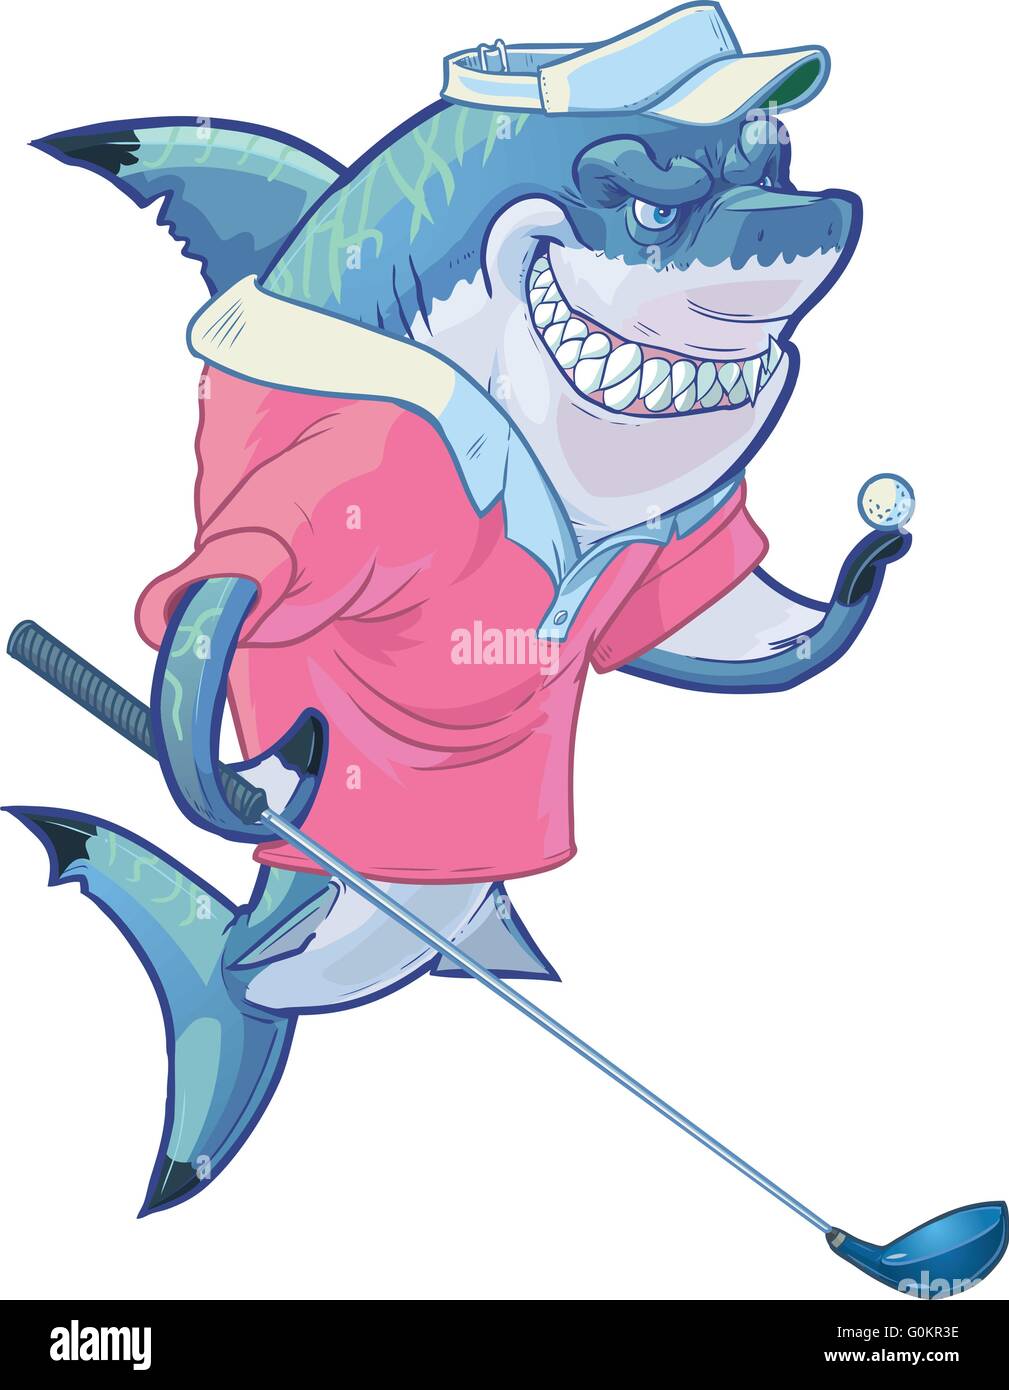 Vector cartoon clip art illustration d'une mascotte requin souriant moyenne portant un costume de golf tout en maintenant un pilote et la balle. Illustration de Vecteur